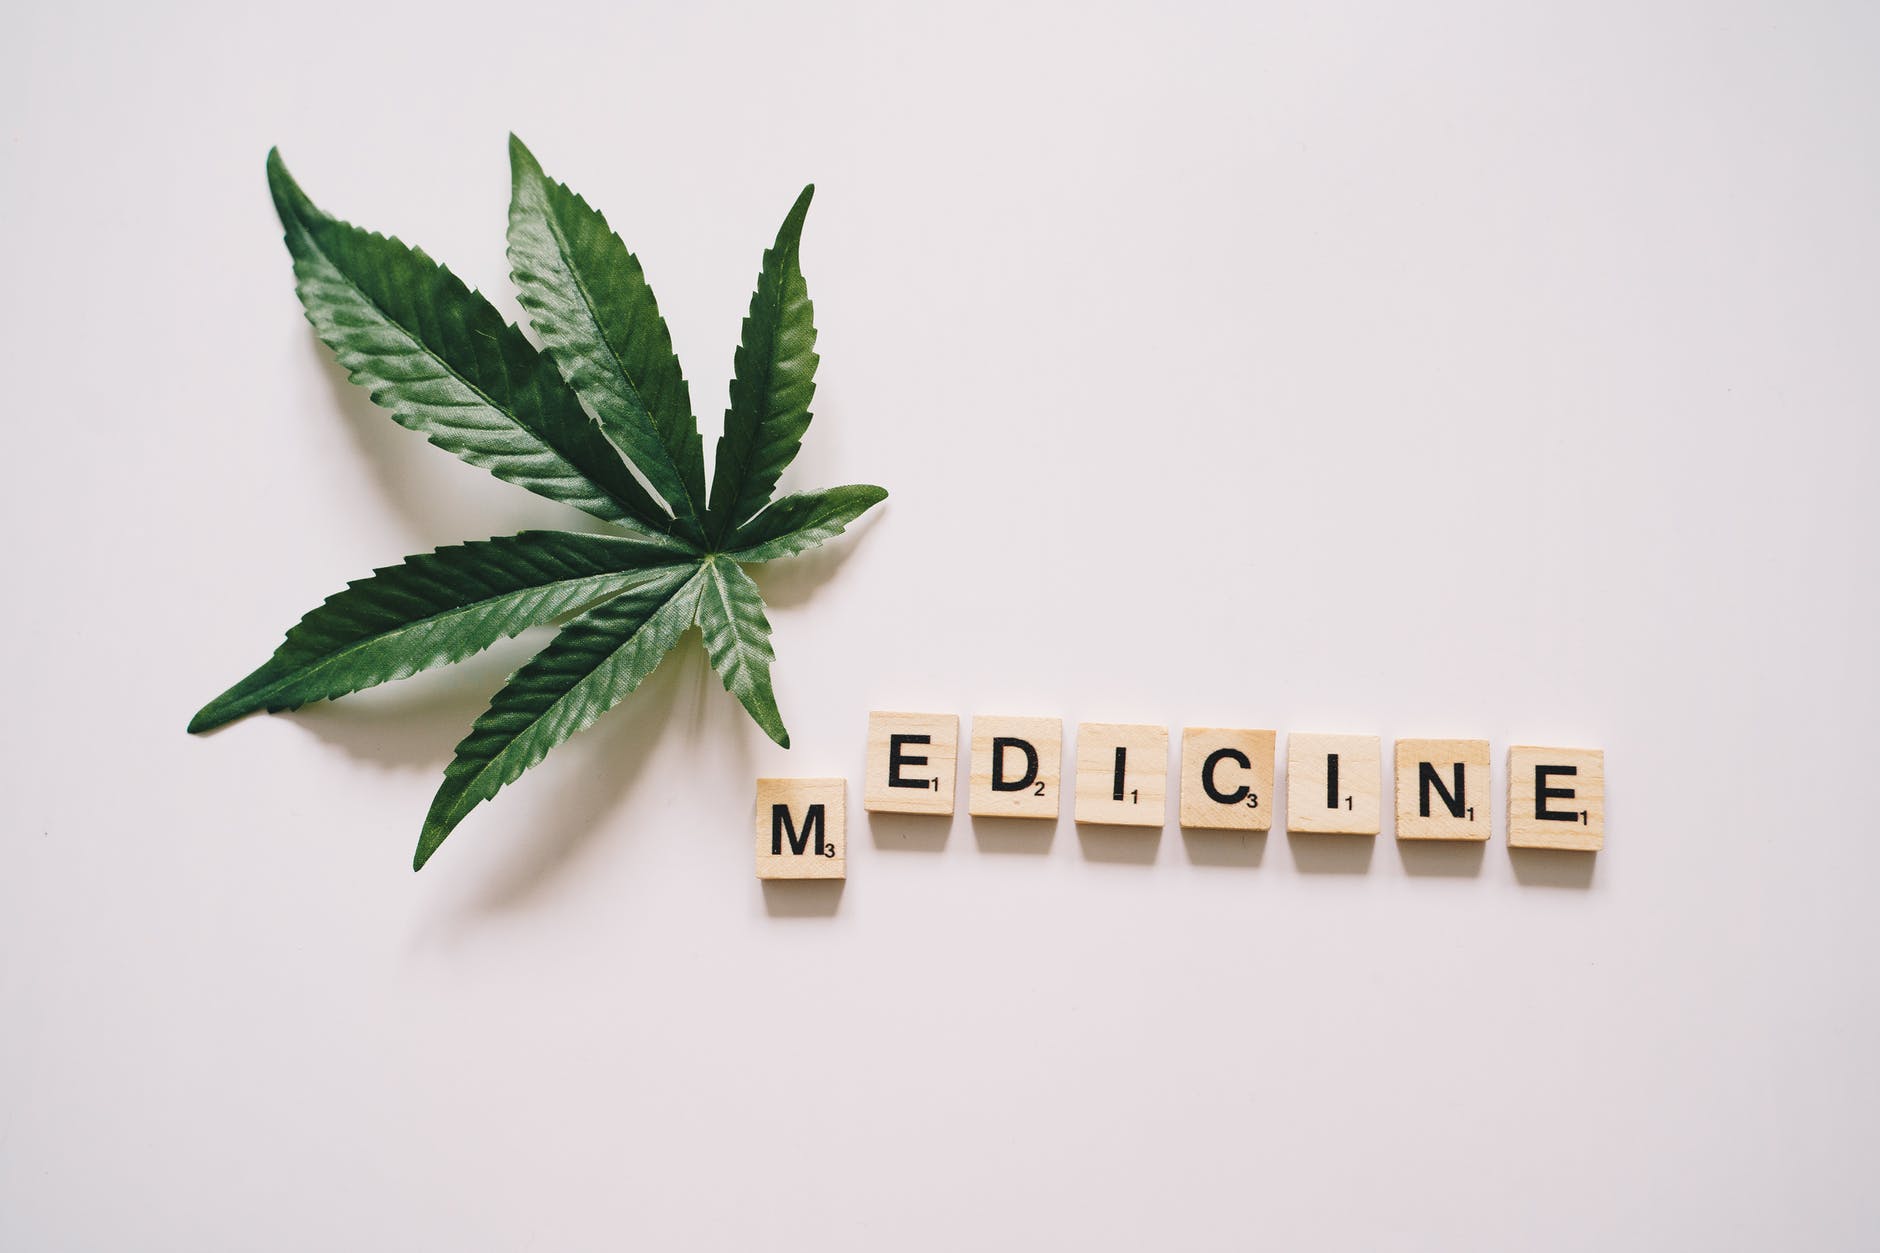 Medyczna marihuana jako lekarstwo